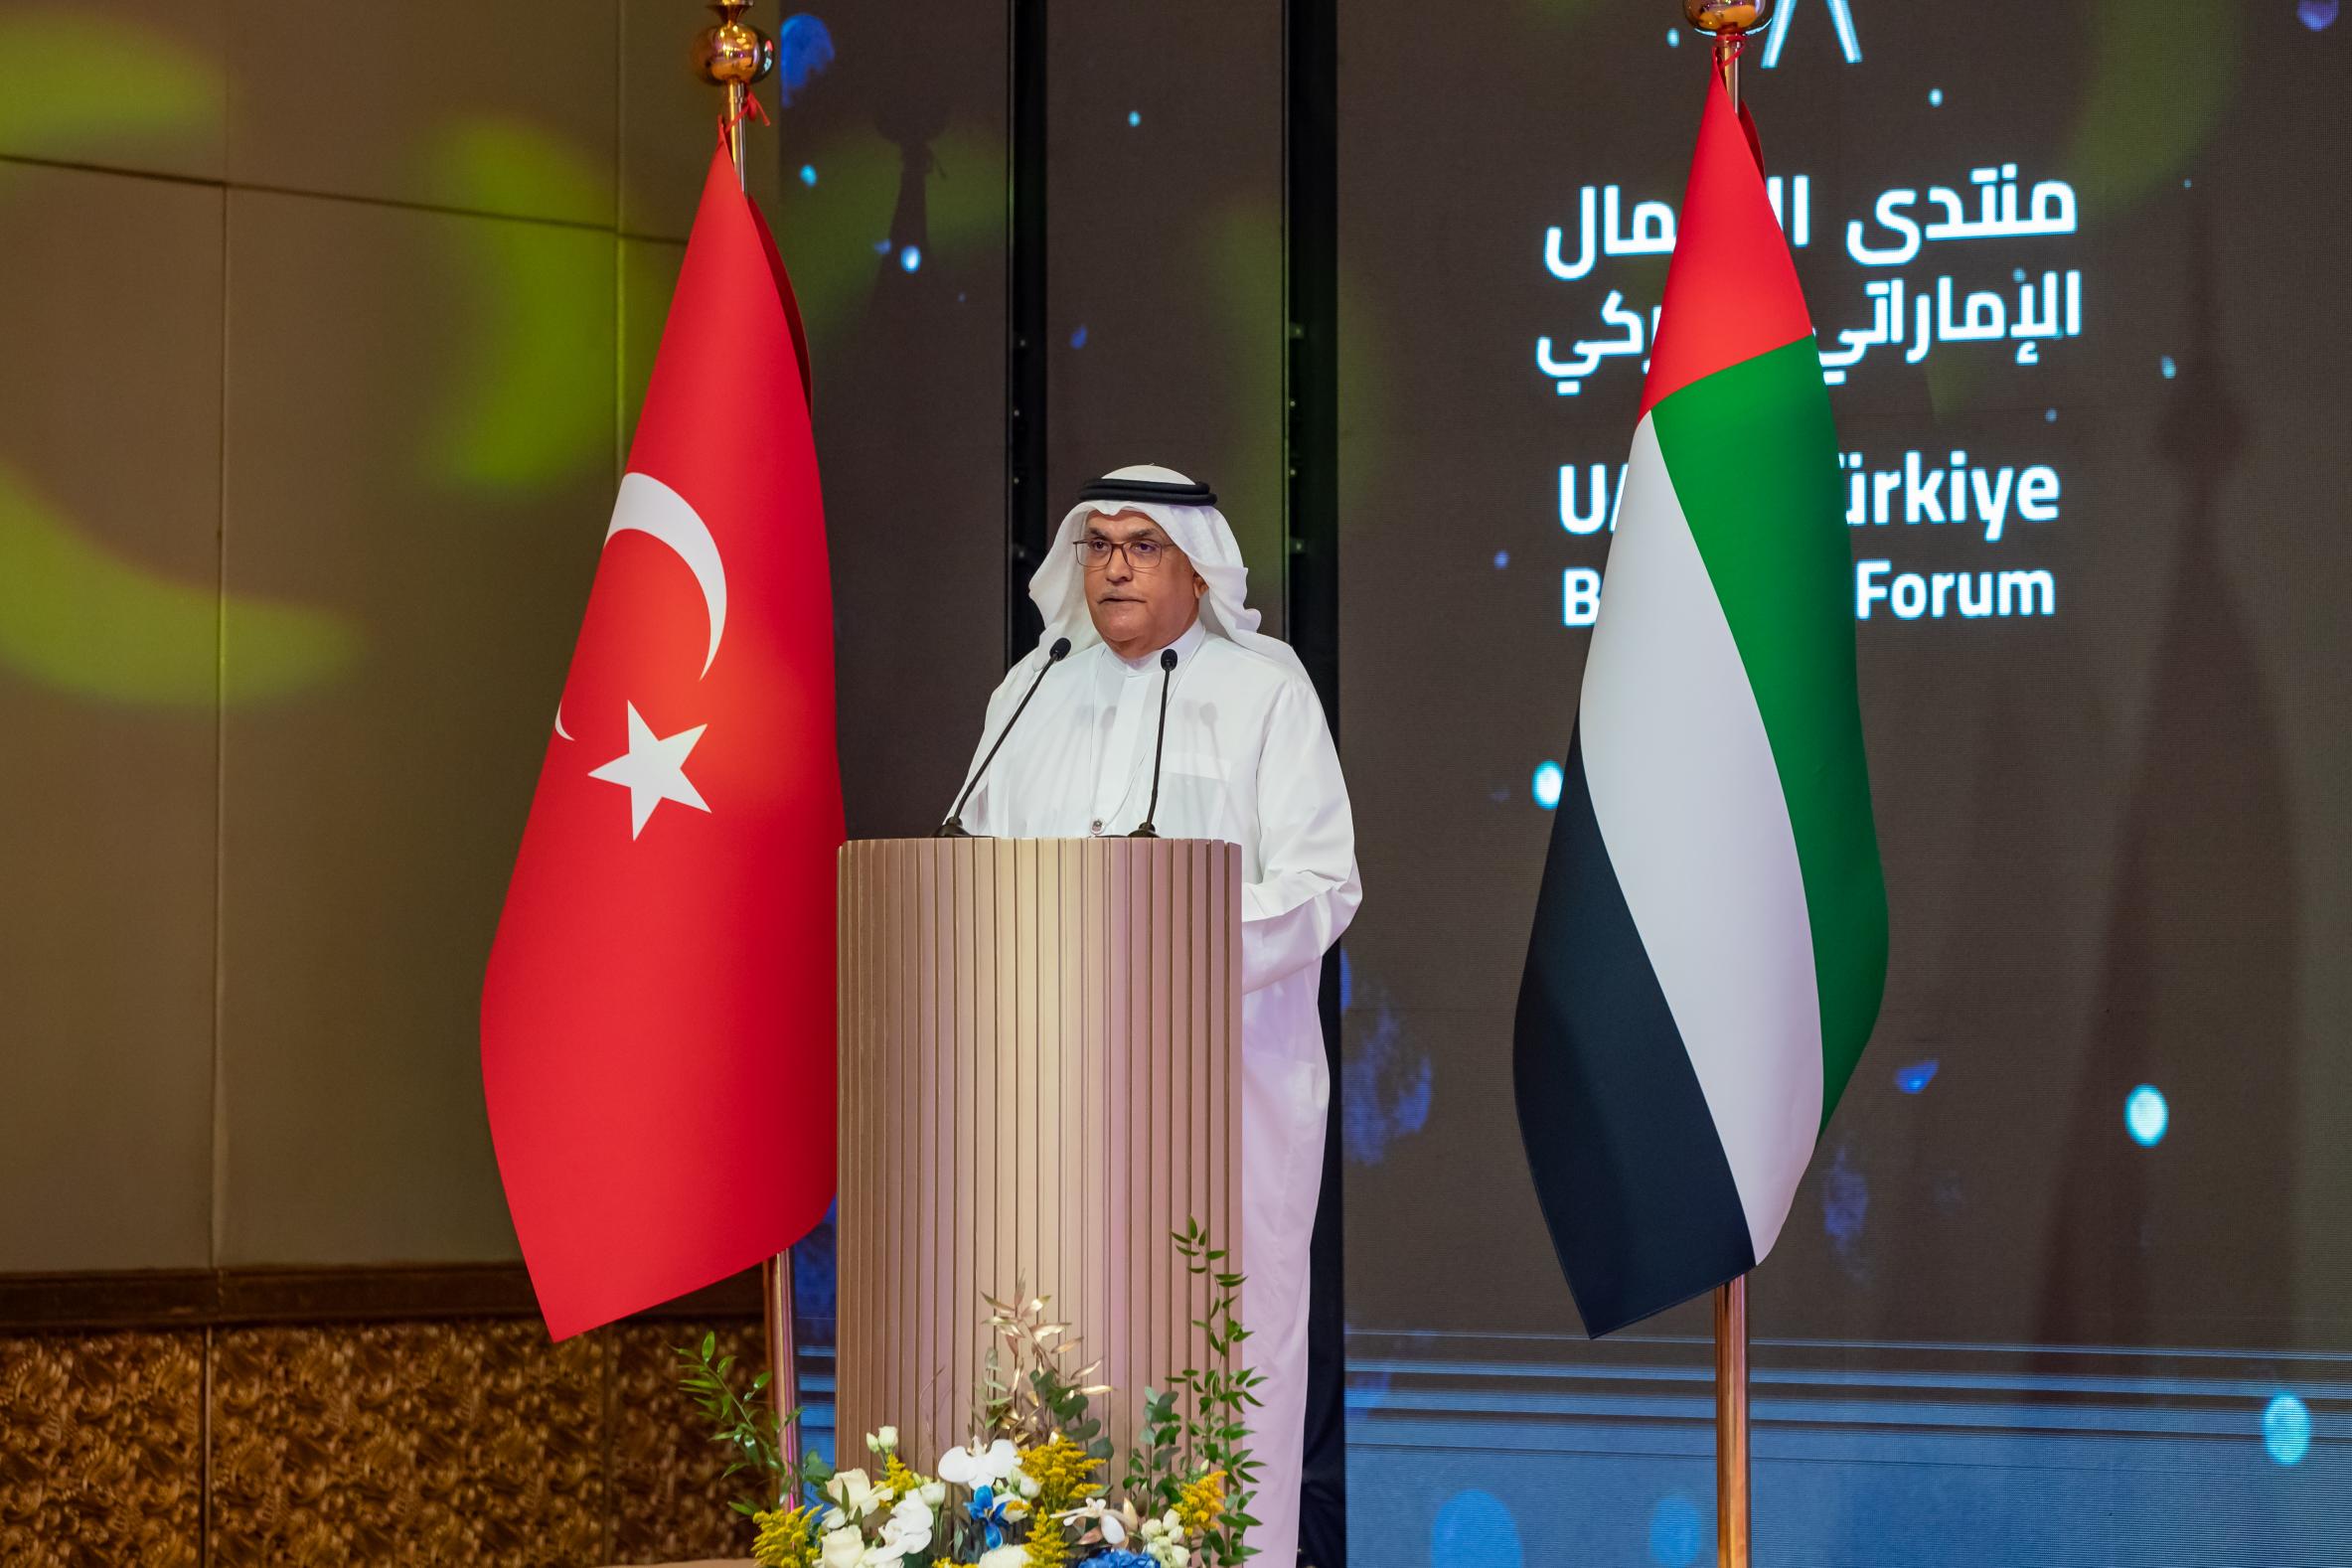 المزروعي: الإمارات وتركيا يدخلان محطة جديدة لتعزيز شراكتهما الاستراتيجية